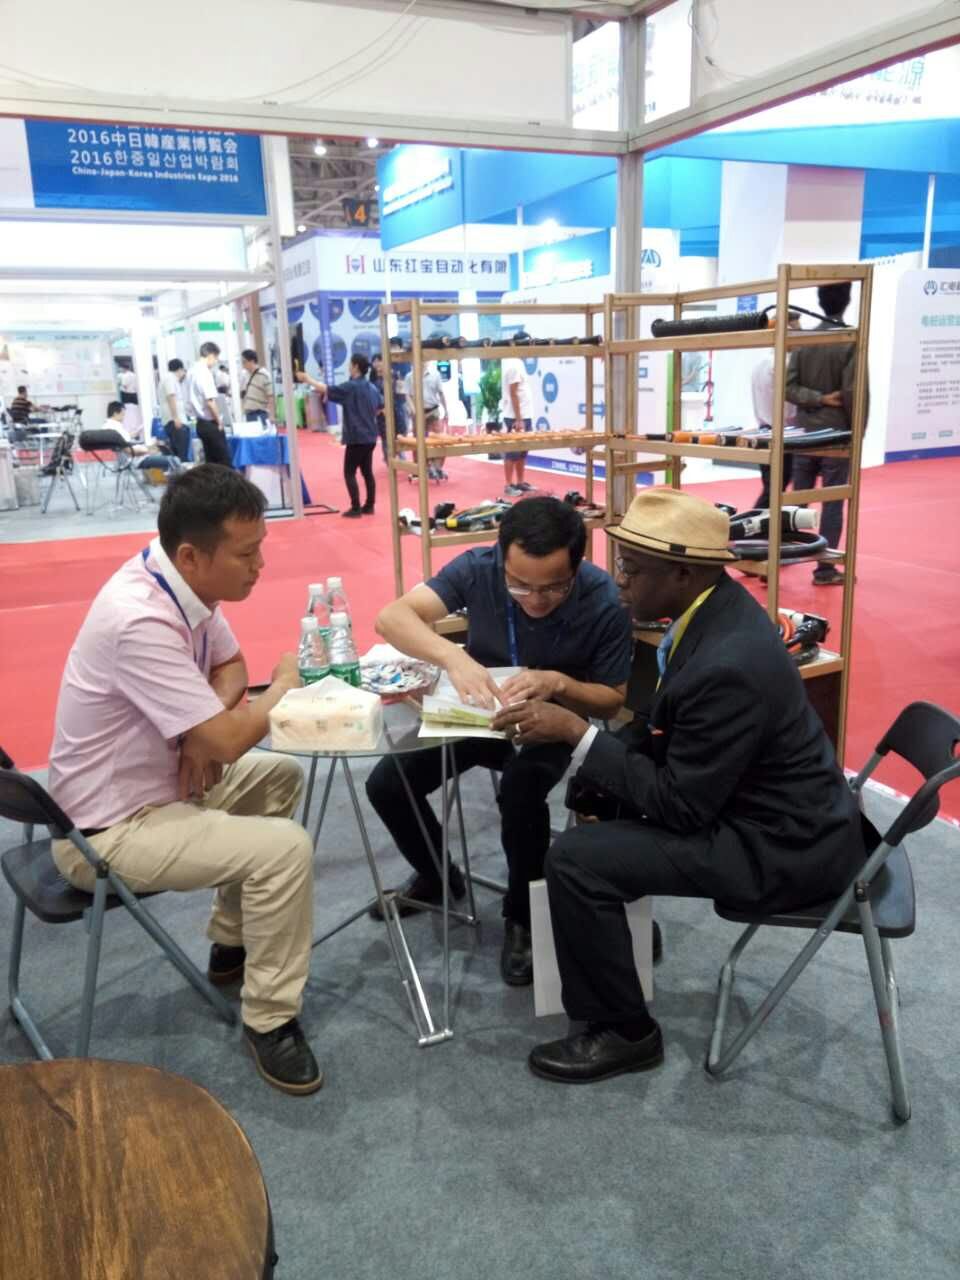 OMG participou da Expo Indústria China-Japão-Coreia 2016 em Weifang, Shandong